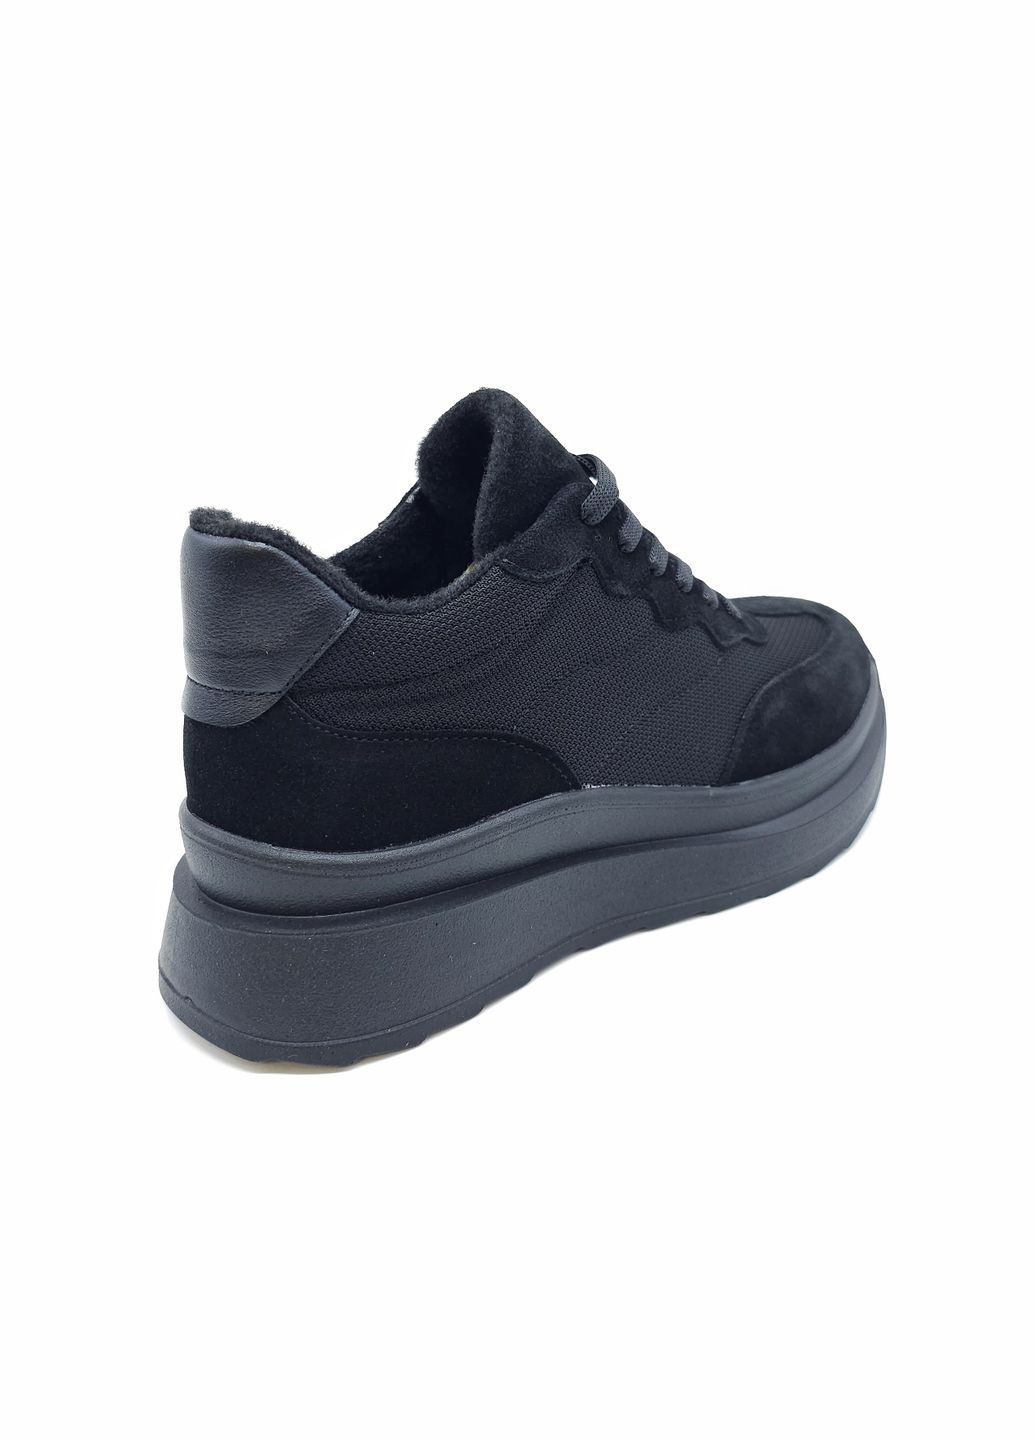 Чорні всесезонні жіночі кросівки чорні шкіряні mr-12-5 27 см (р) Morento